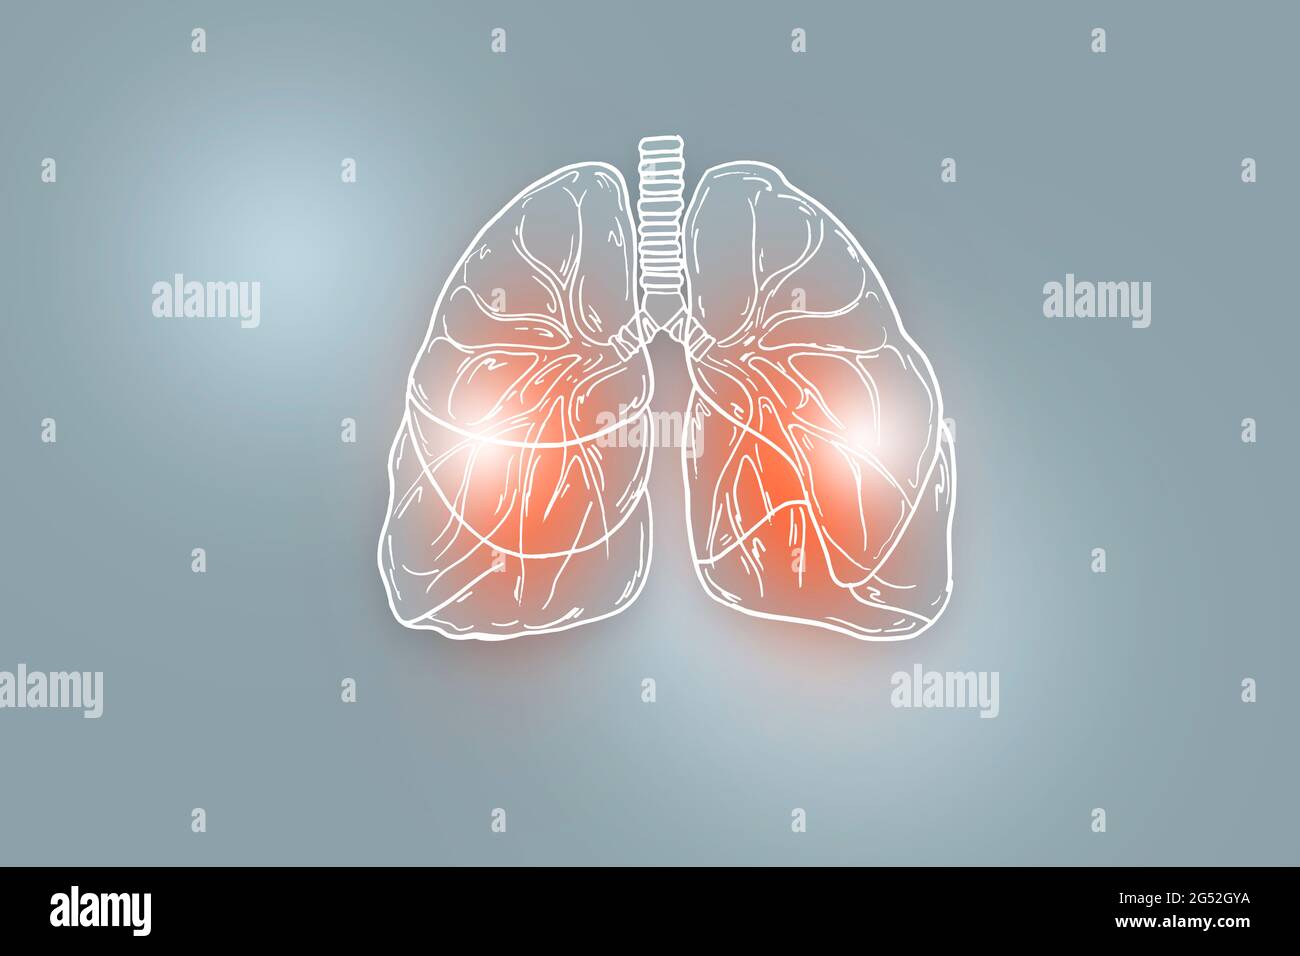 Illustration des poumons humains sur fond gris clair. Médical, science ensemble avec les principaux organes humains avec espace de copie vide pour le texte Banque D'Images